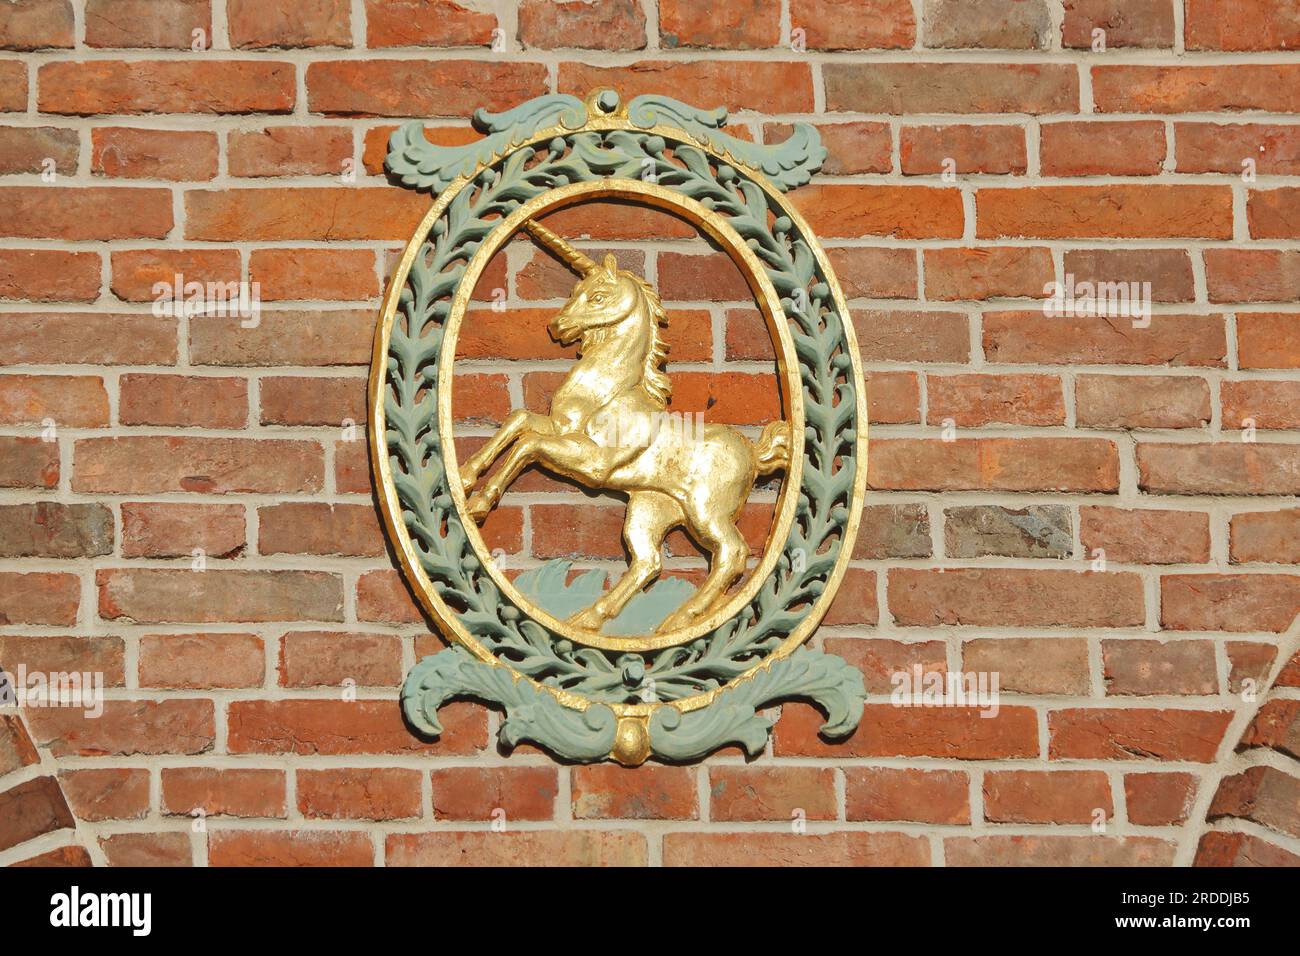 licorne dorée comme armoiries de la ville sur le centre communautaire de Schranne, Giengen an der Brenz, Souabe Alb, Bade-Württemberg, Allemagne Banque D'Images